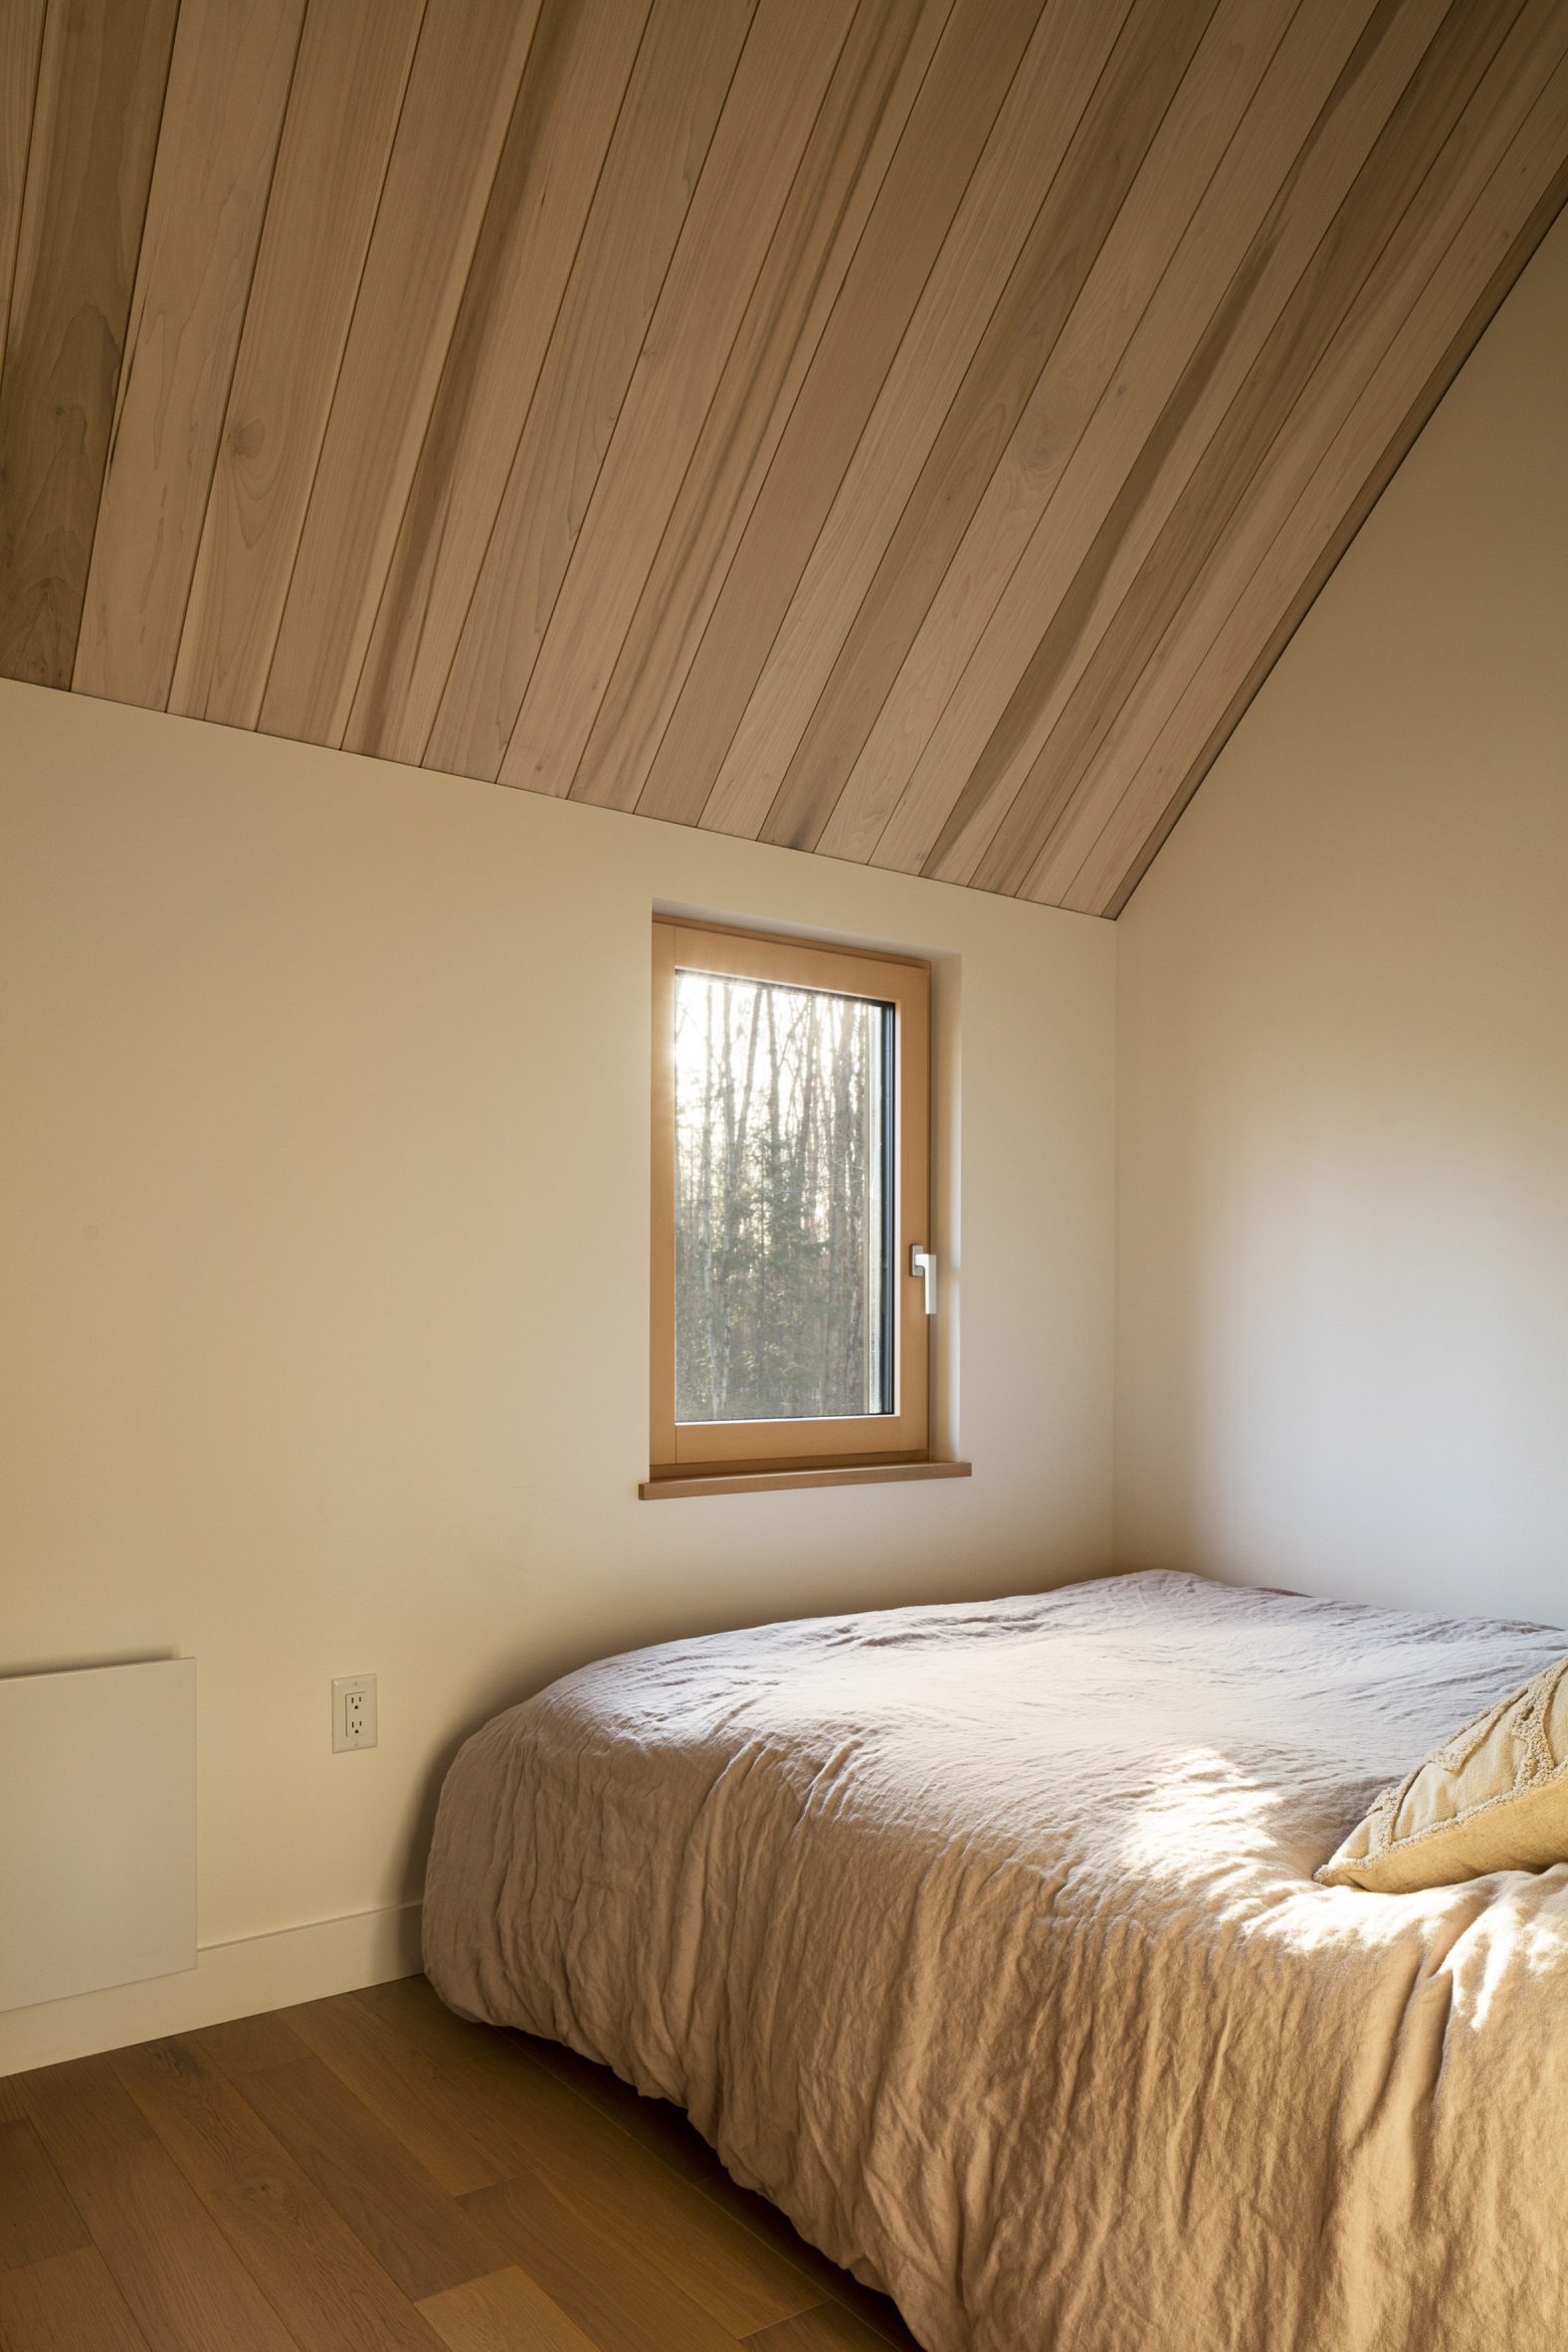 Một phòng ngủ khách cũng được thiết kế tối giản cả về nội thất lẫn màu sắc, tôn lên vẻ đẹp của khung cảnh thiên nhiên thay đổi 4 mùa bên ngoài ô cửa nhỏ.